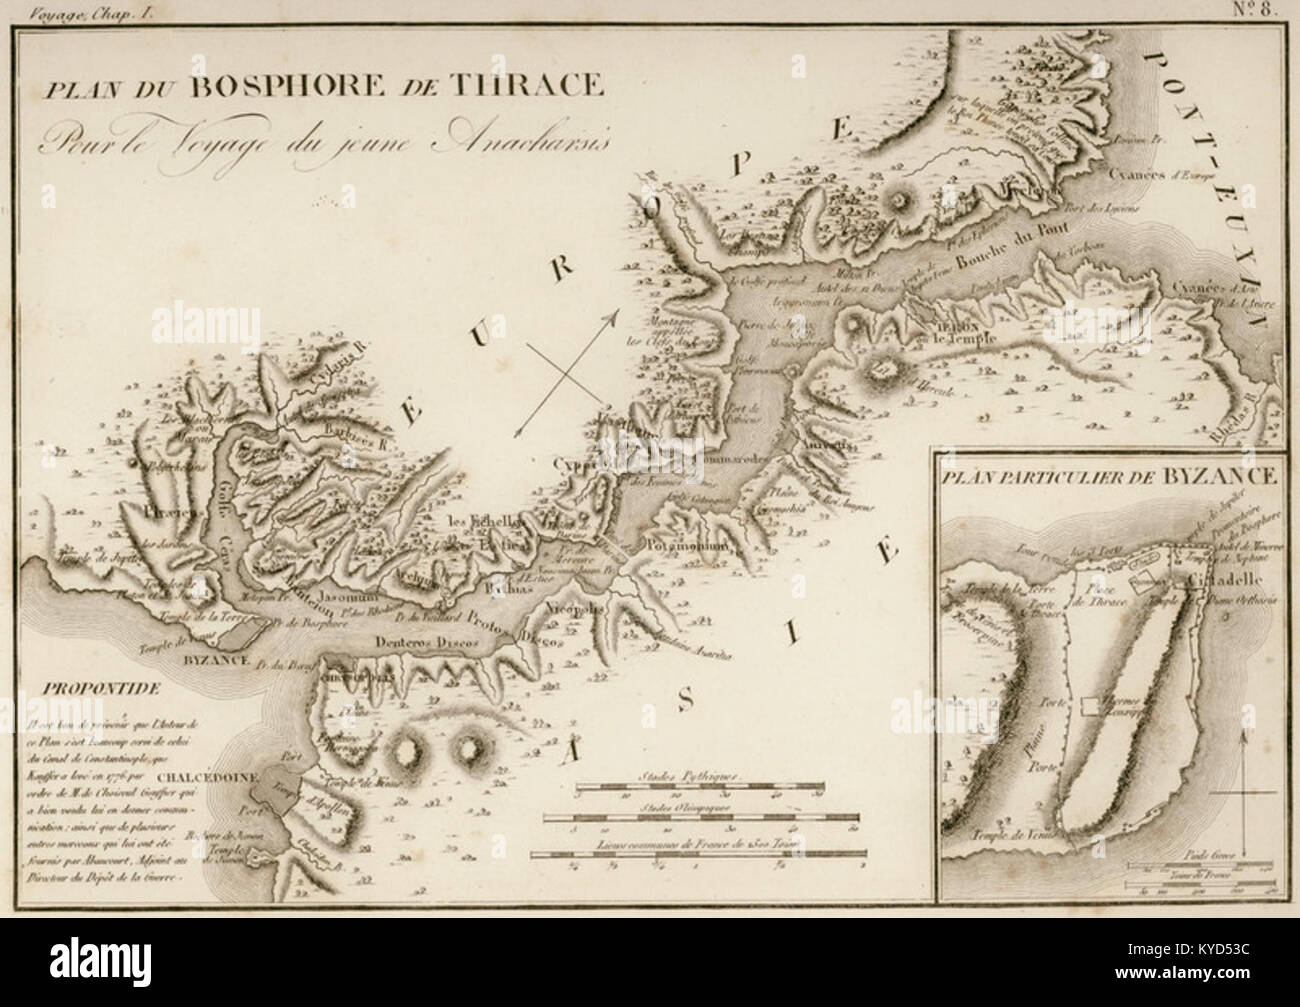 Plan du Bosphore de Thrace pour le voyage du jeune Anacharsis, (inset) Plan  Particulier du Byzance - Jean-Jacques Barthélemy - 1832 Stock Photo - Alamy